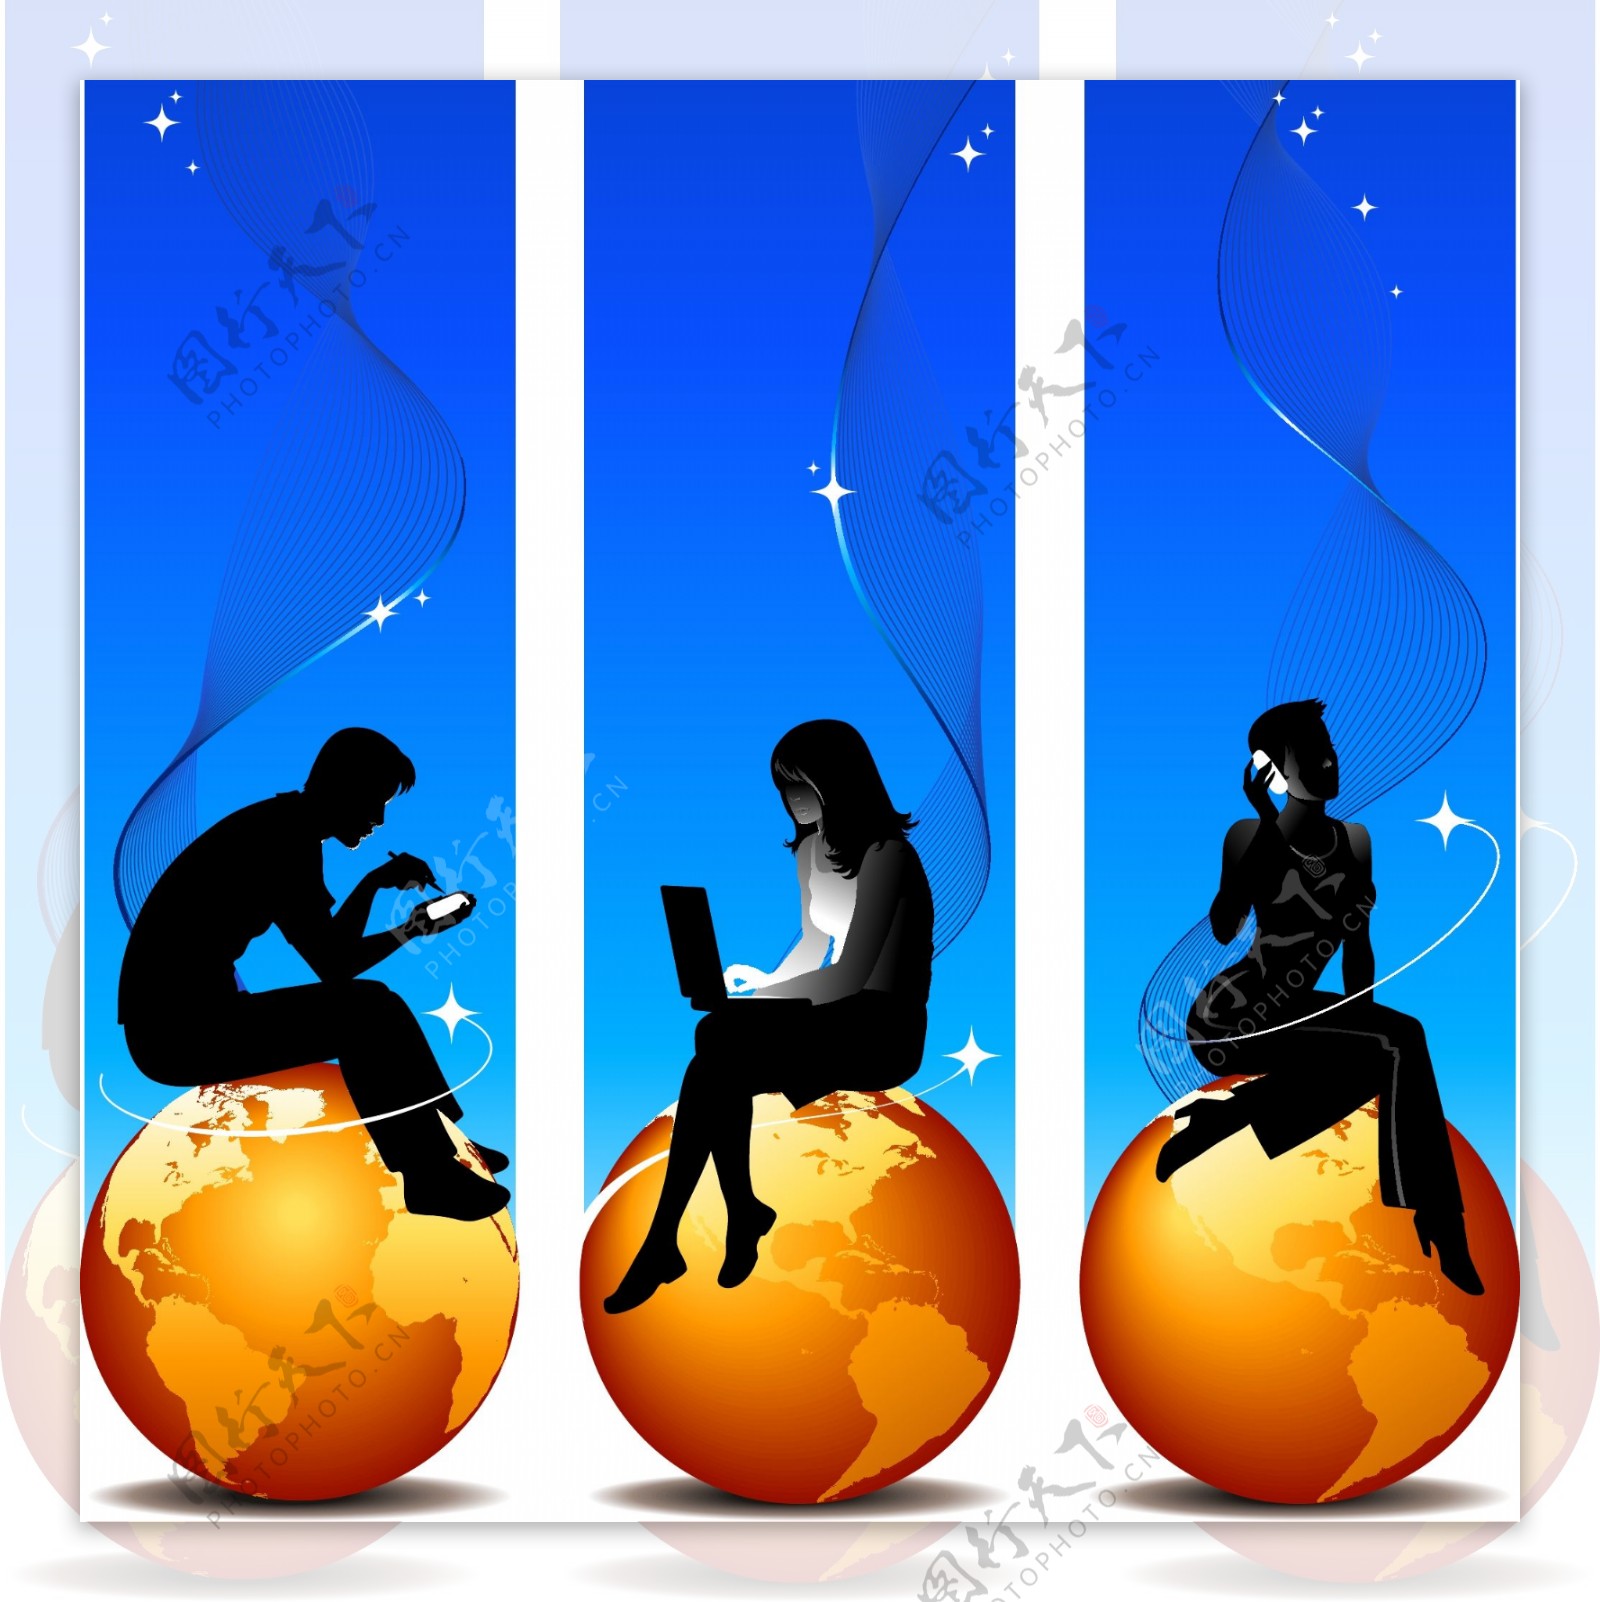 职业男性和女性坐在地球上的剪影矢量素材金